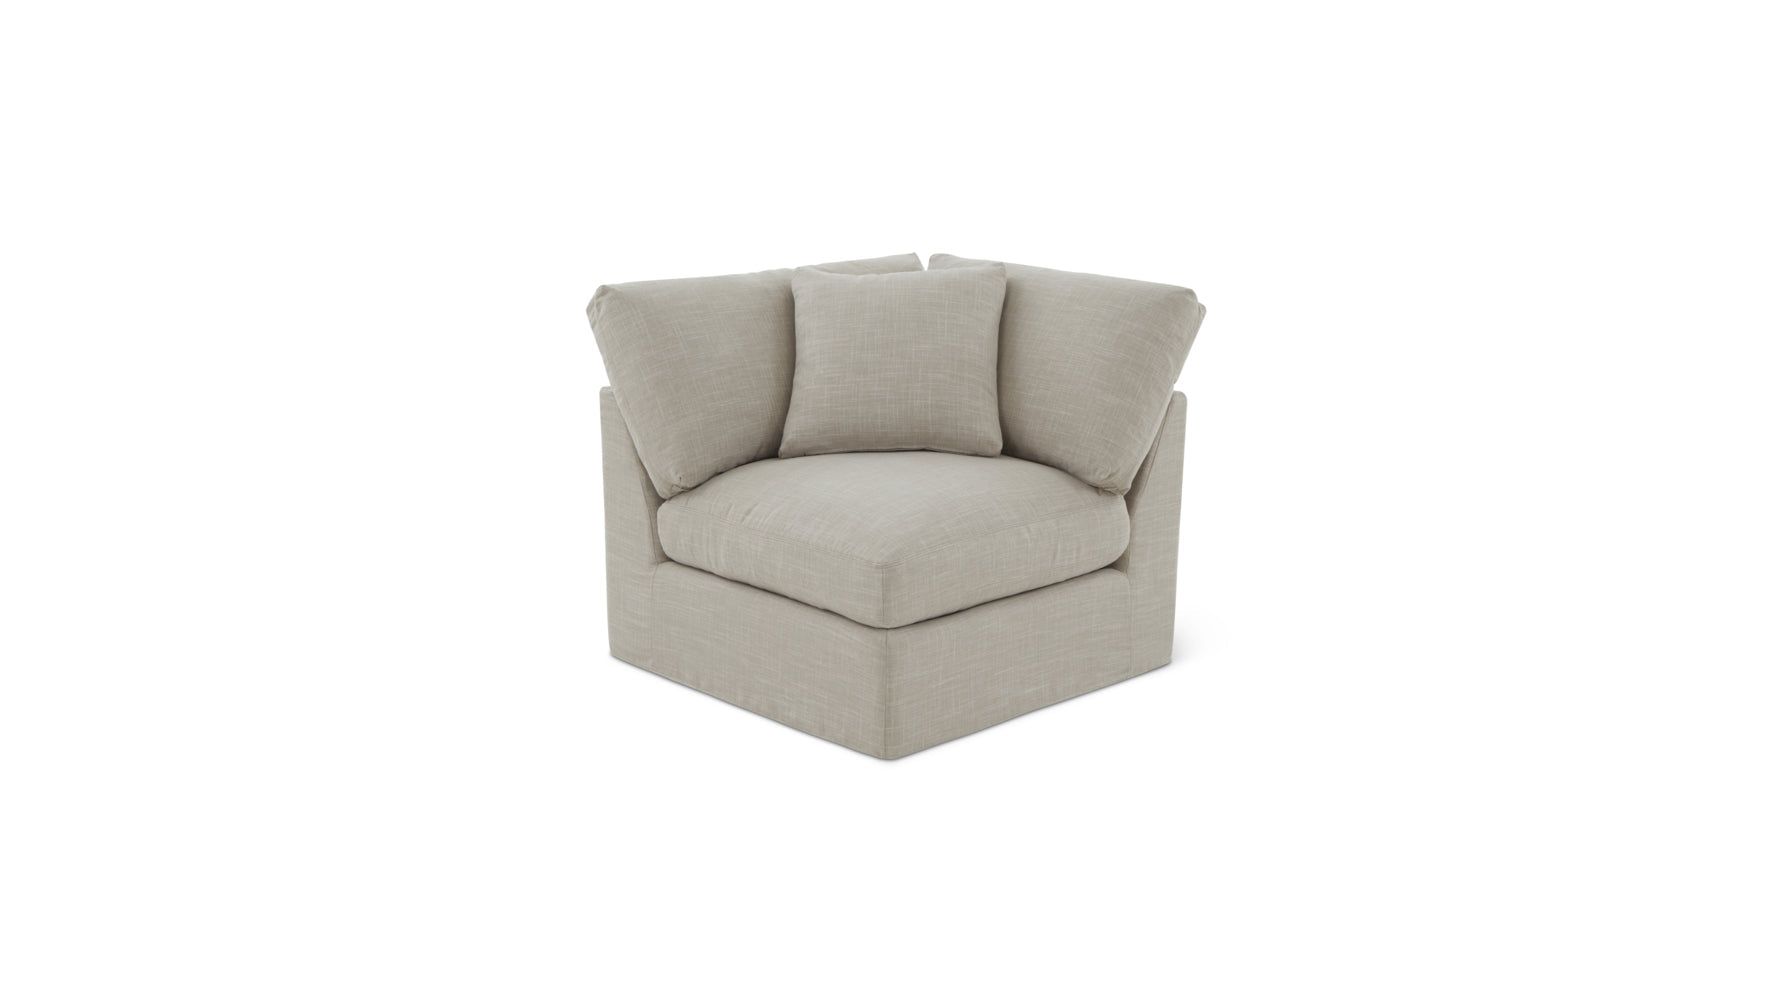 Get Together™ Corner Chair, Standard, Light Pebble - Image 5